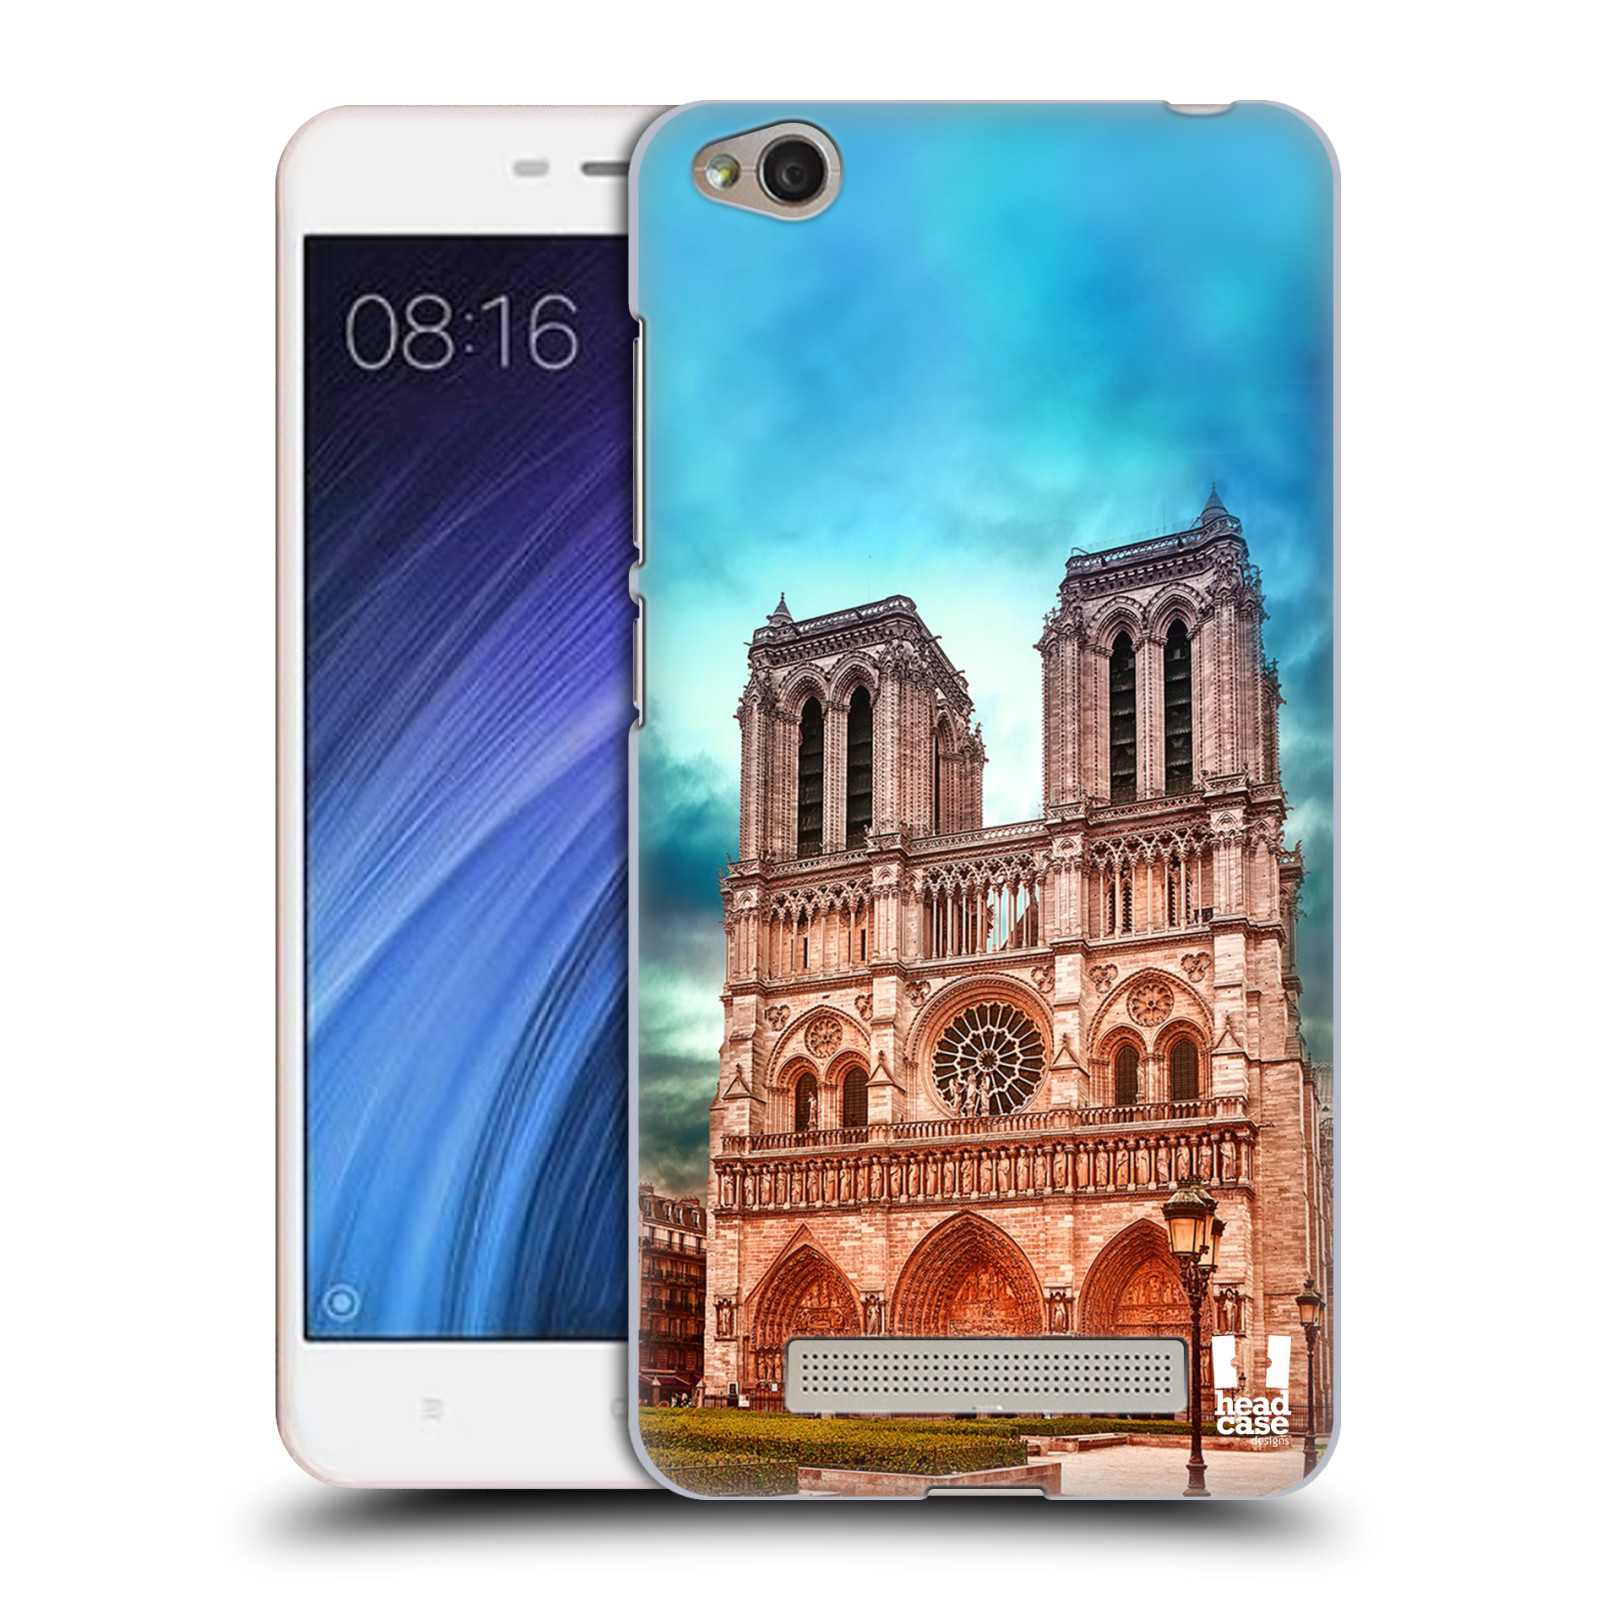 Pouzdro na mobil Xiaomi Redmi 4a - HEAD CASE - historická místa katedrála Notre Dame